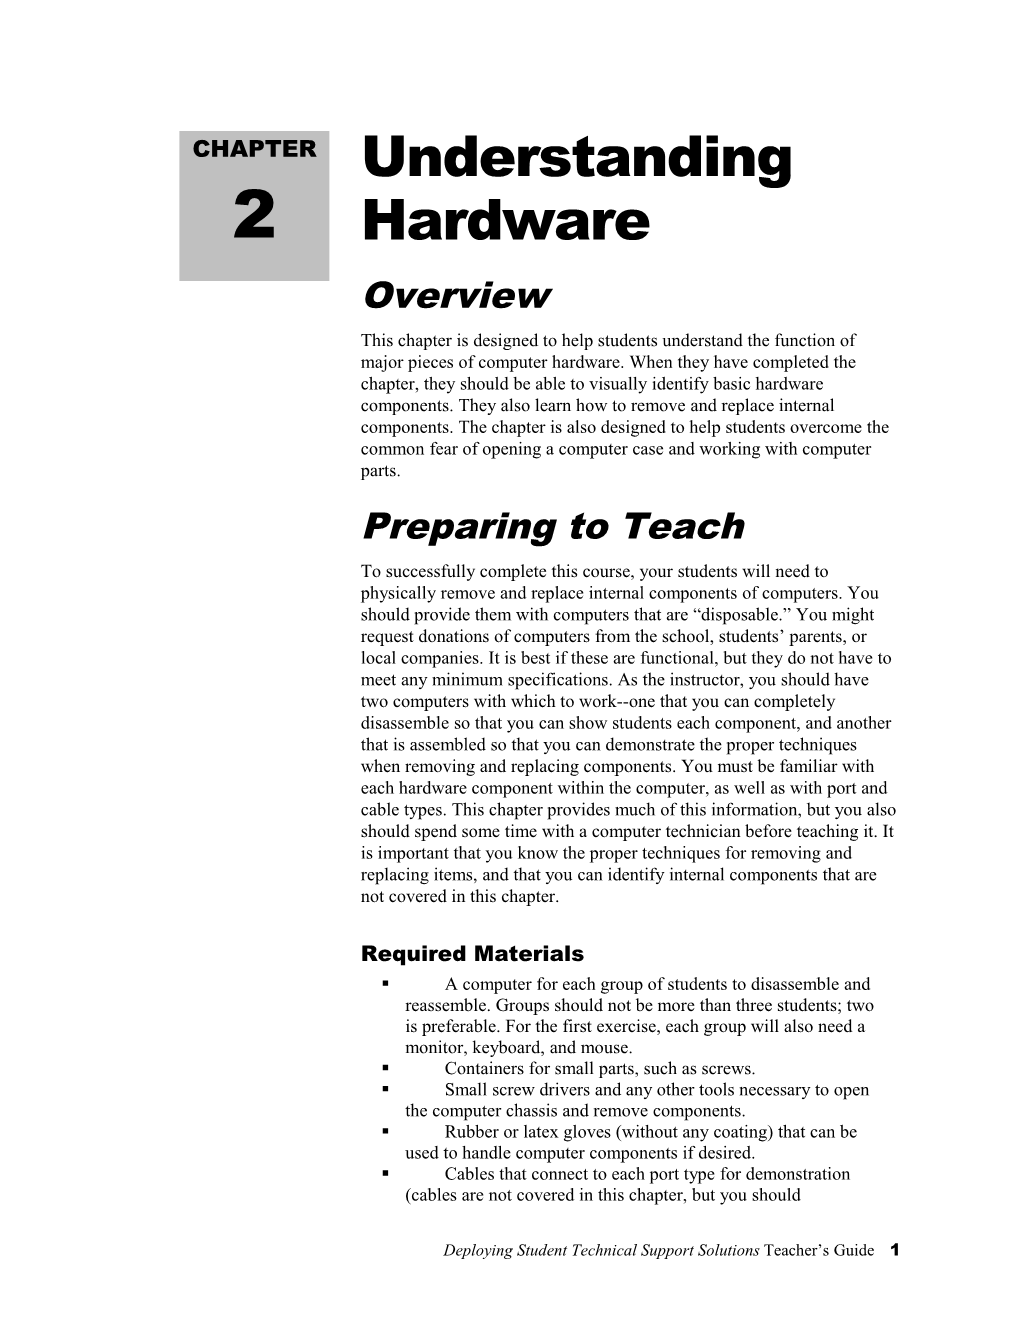 Understanding Hardware